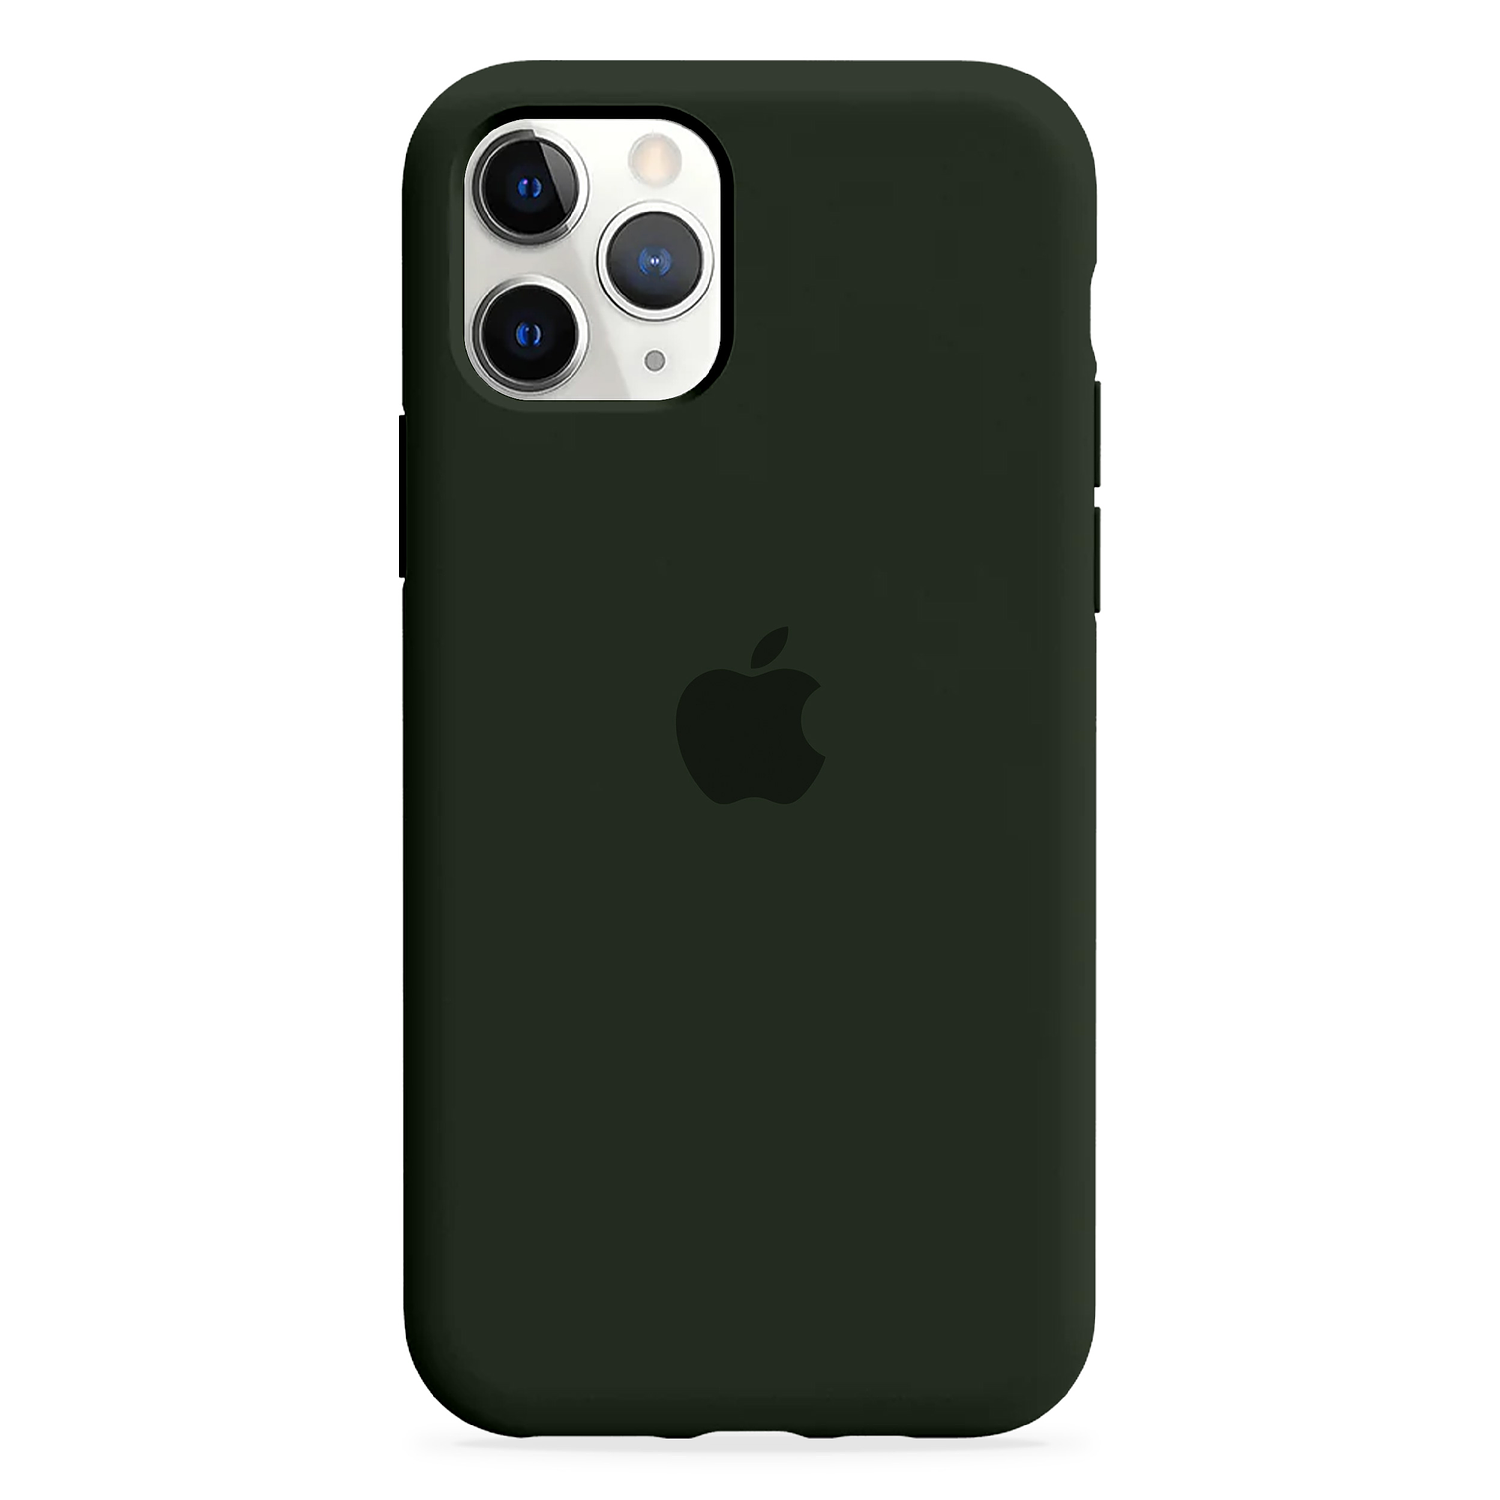 Carcasa de Silicona - iPhone 11 Pro Max 14